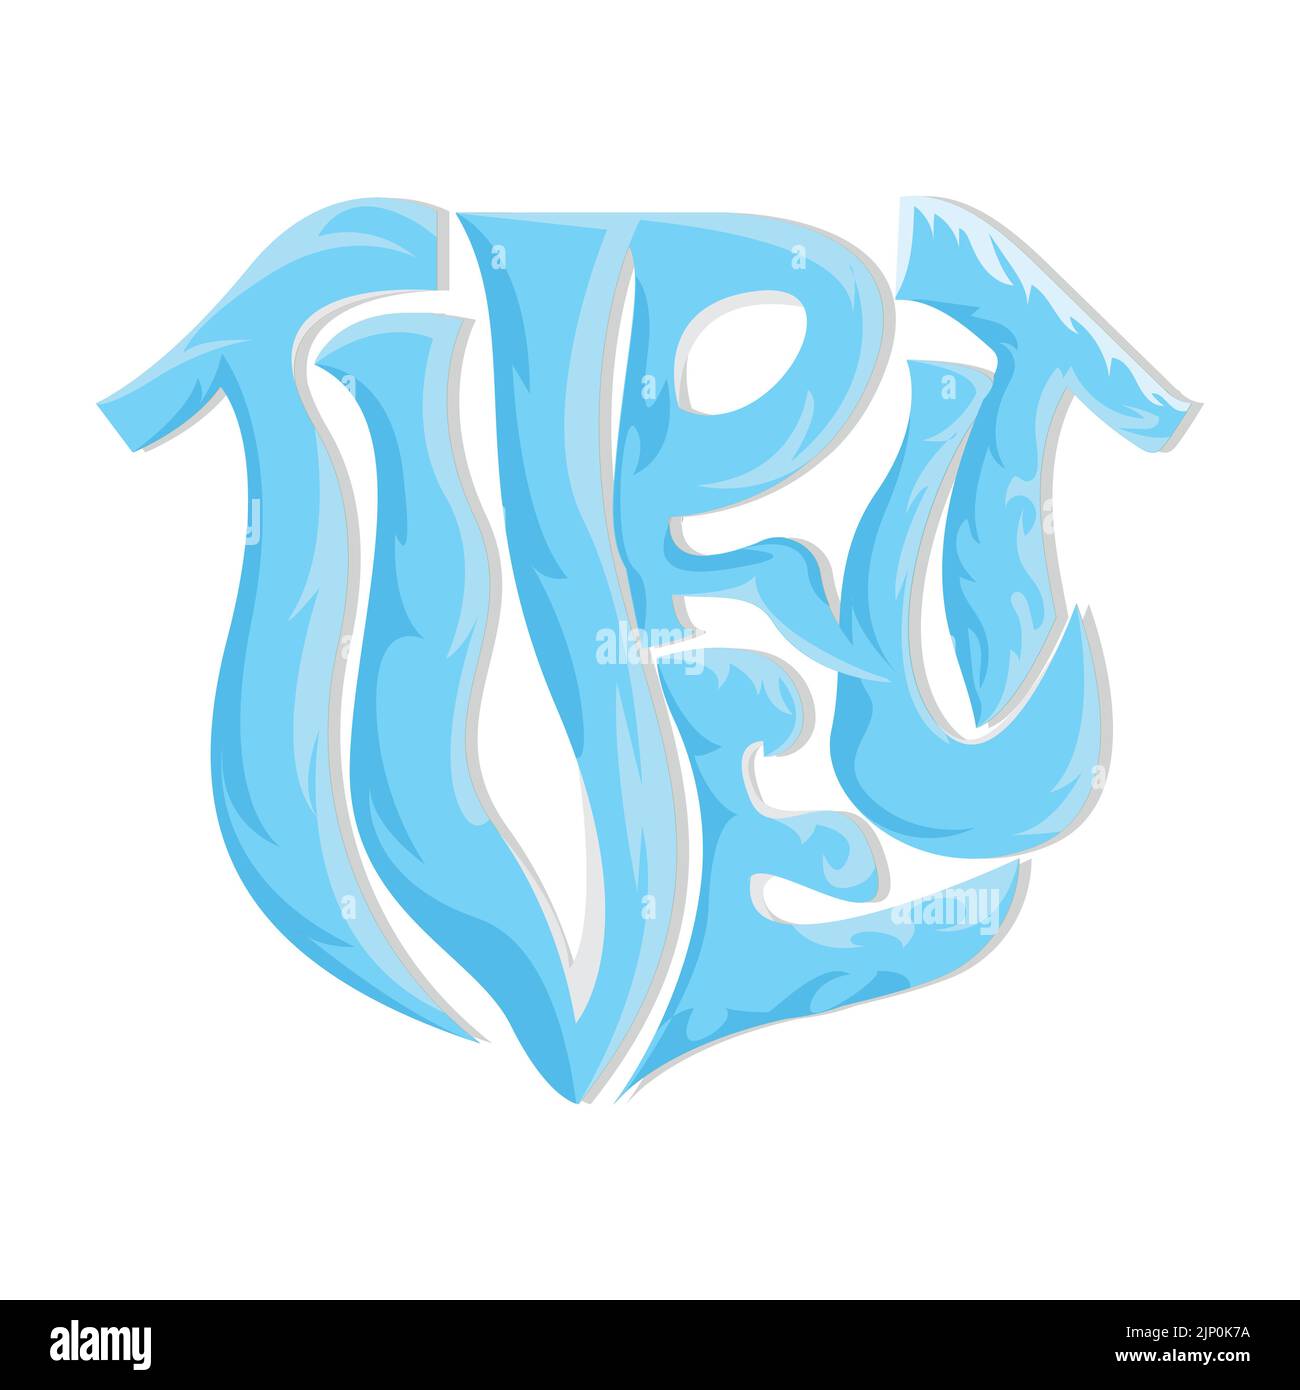 Tortue de mer logo Design protégé Amphibian Marine Animal Icon Illustration, Vector marque identité de l'entreprise Illustration de Vecteur